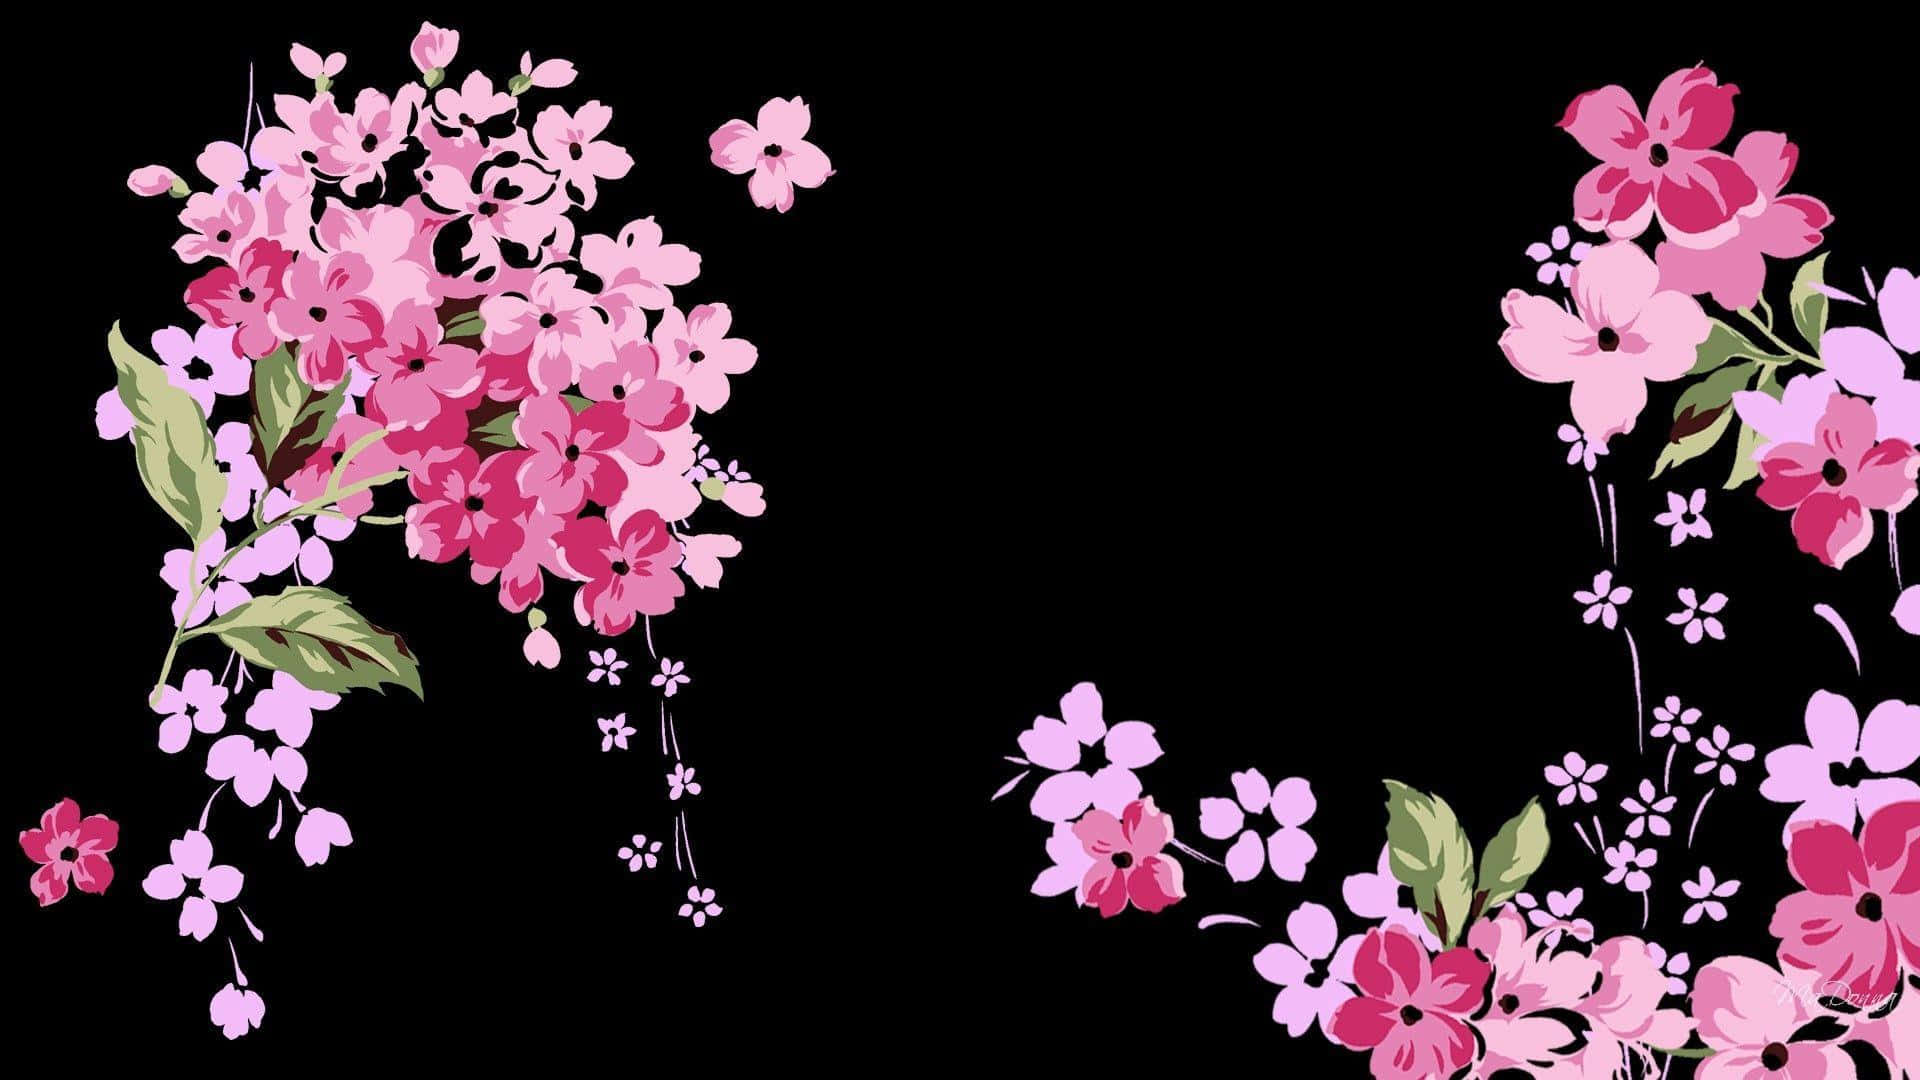 Einschwarzer Hintergrund Mit Pinken Blumen Darauf.